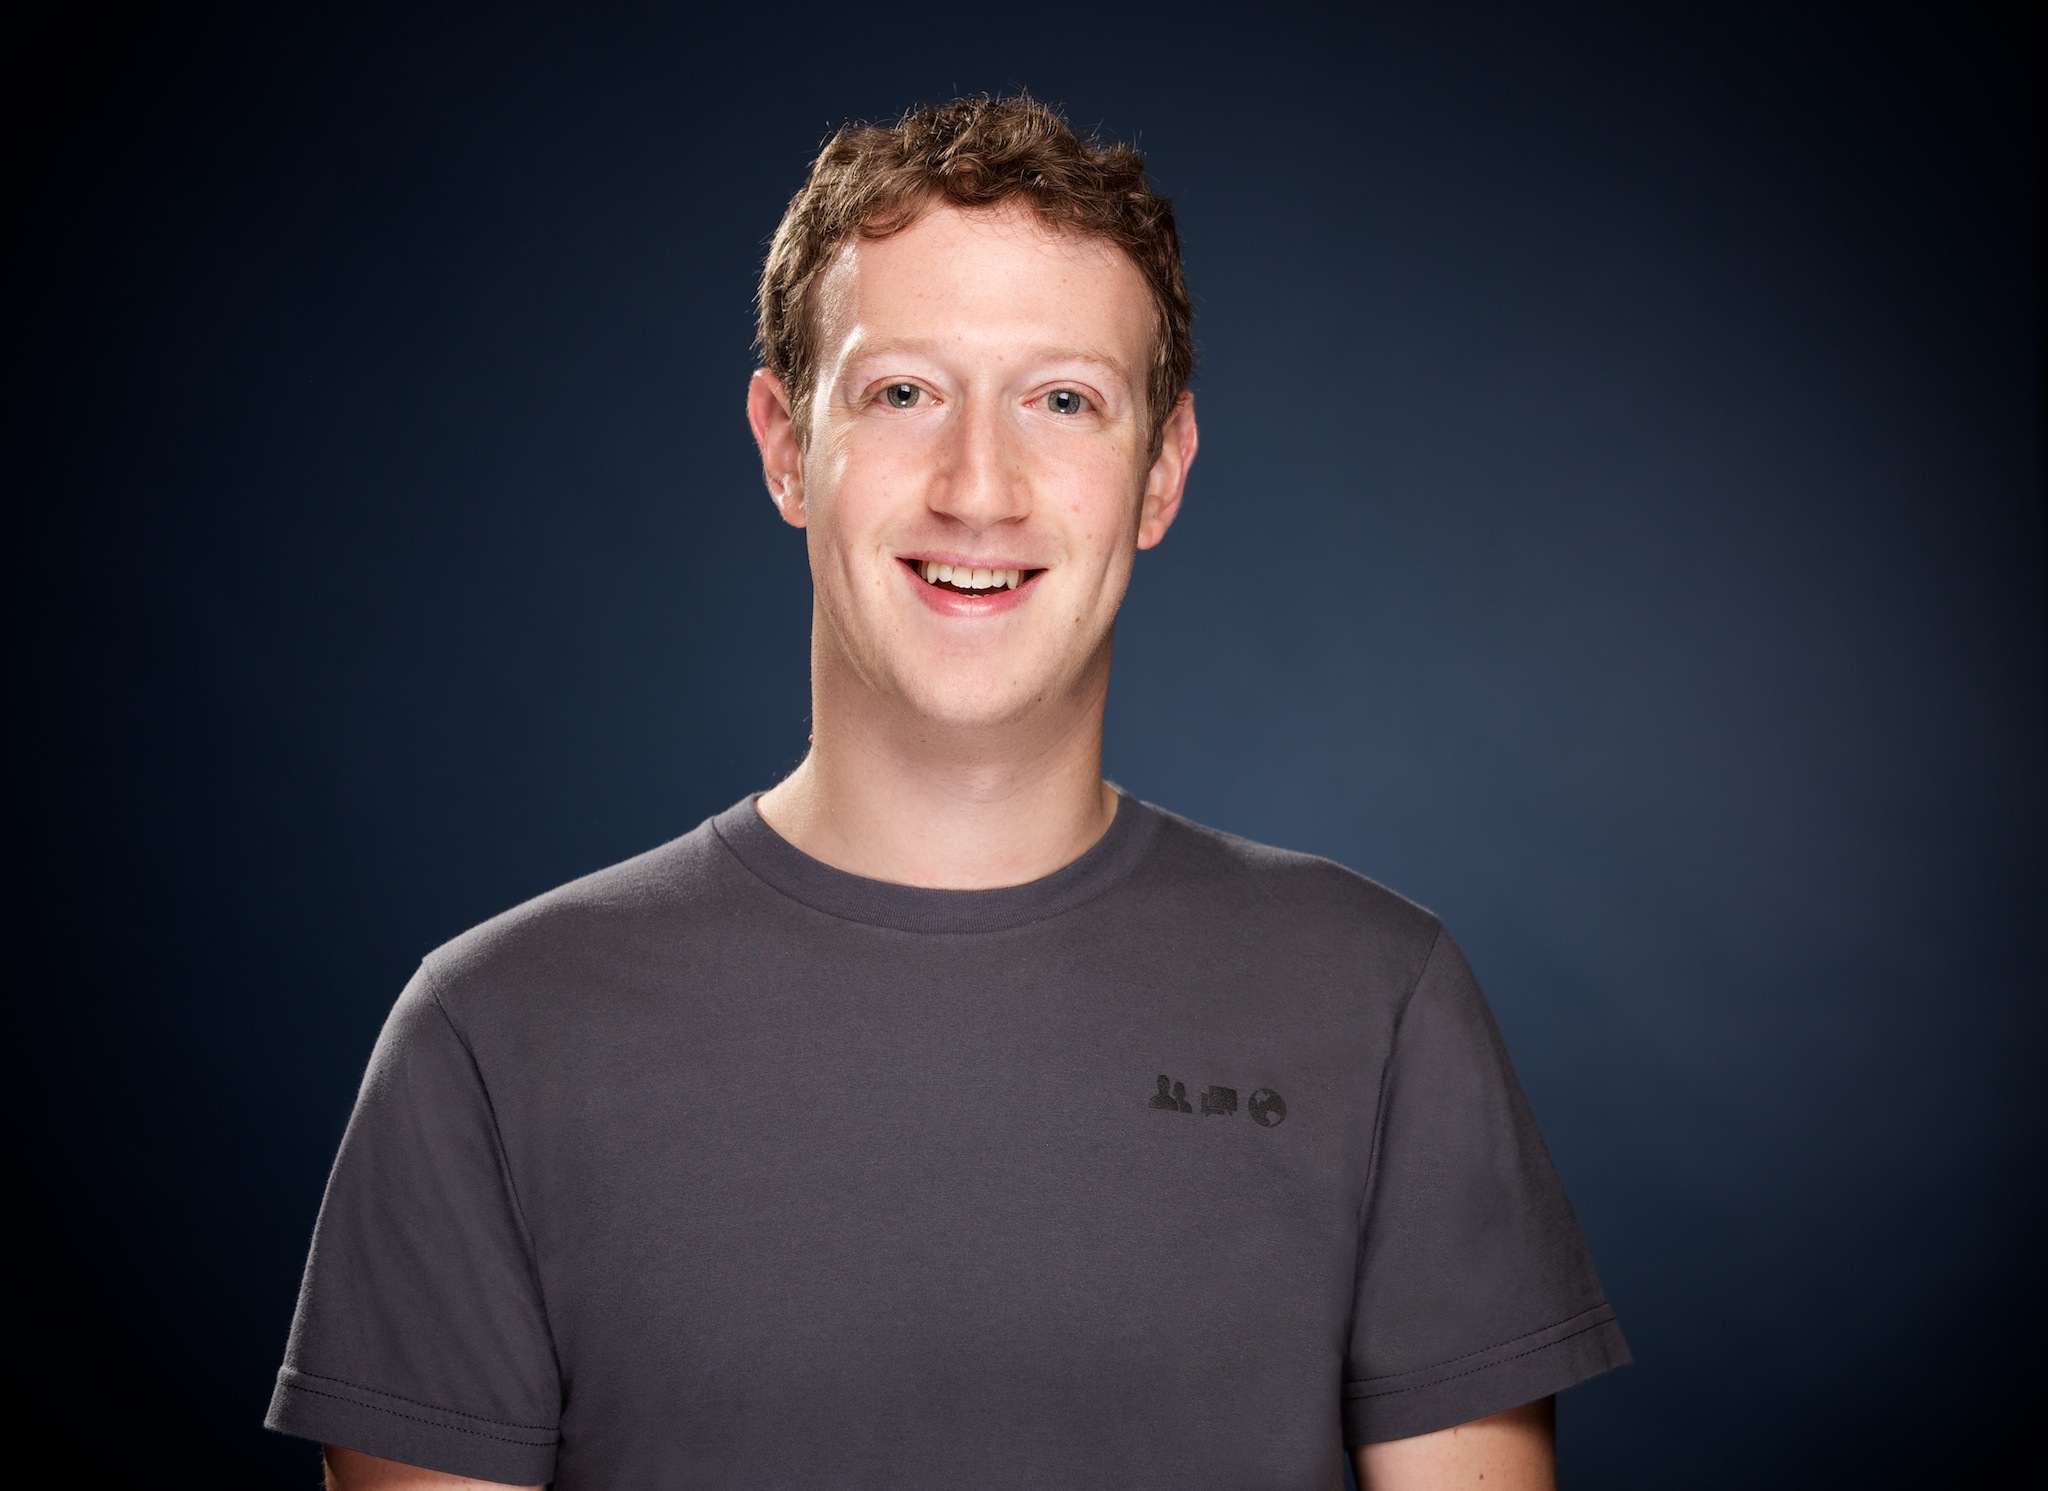 Ce spune Mark Zuckerberg despre scandalul Cambridge Analytica: Facebook are nevoie de "câţiva ani" pentru a rezolva problemele semnalate